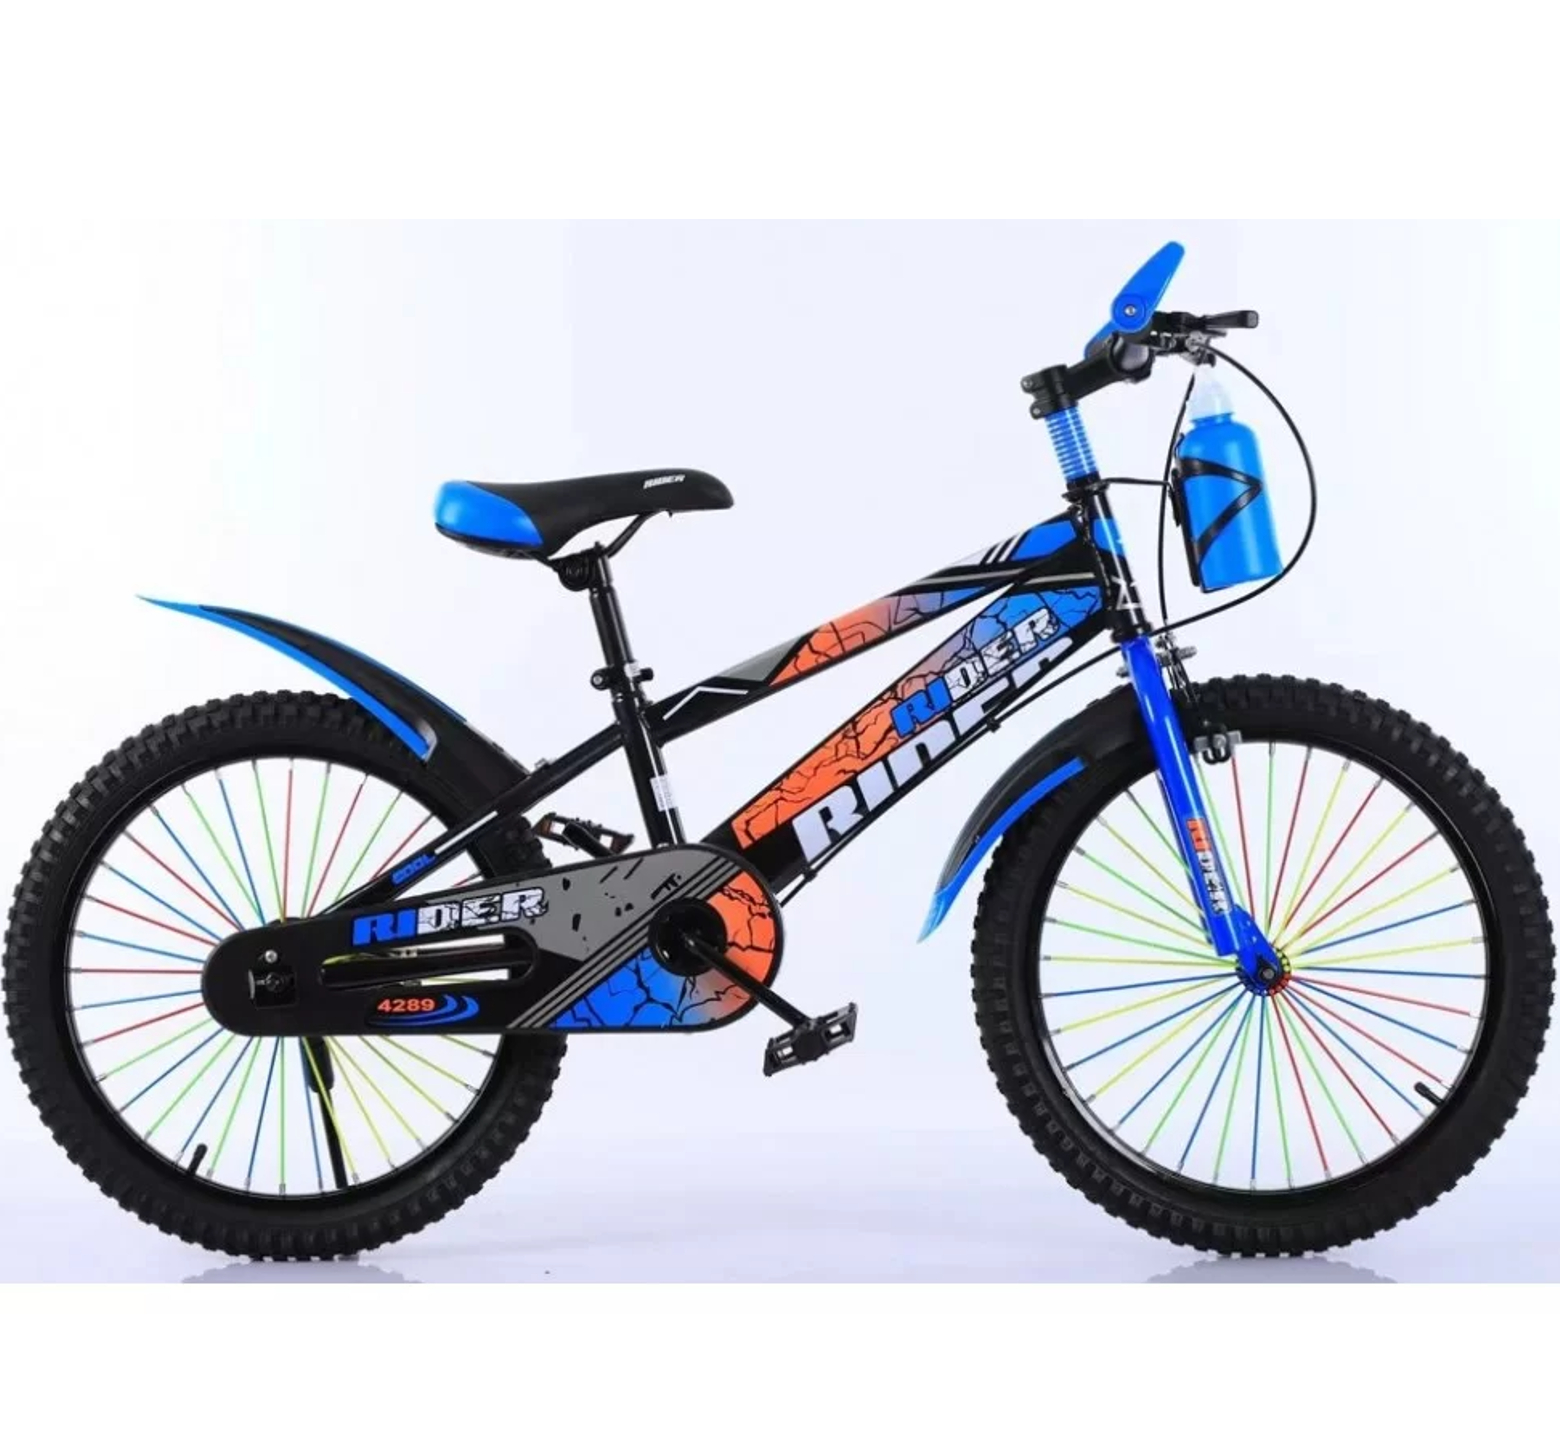 Ποδήλατο Rider 20 ιντσών με παγούρι σε μαύρο μπλε